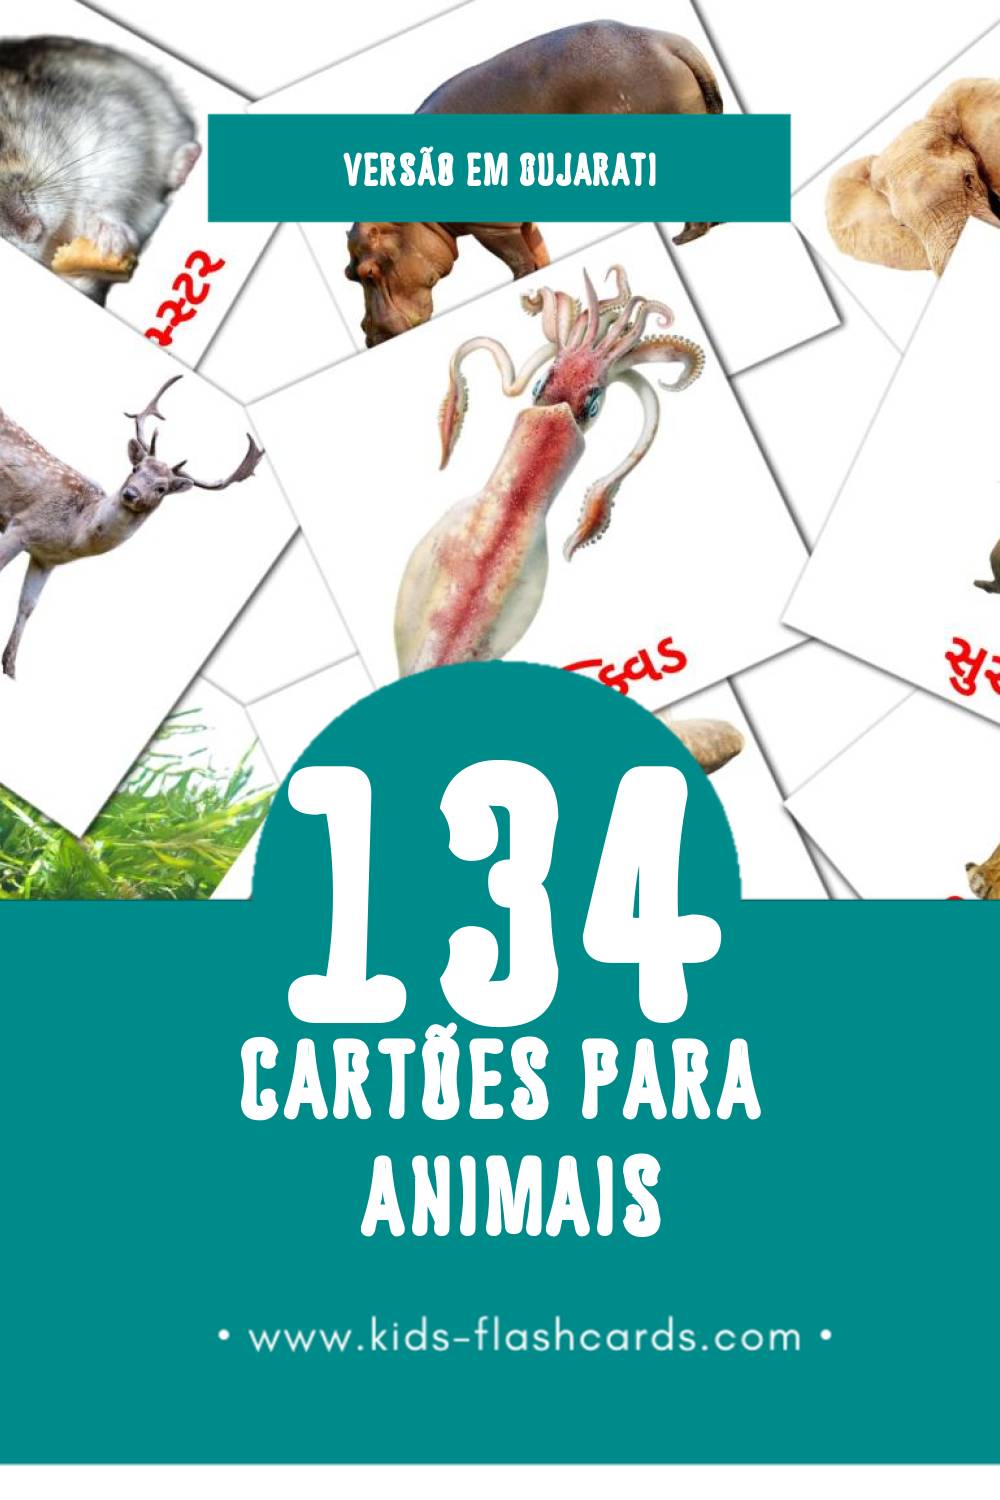 Flashcards de પ્રાણીઓ Visuais para Toddlers (134 cartões em Gujarati)